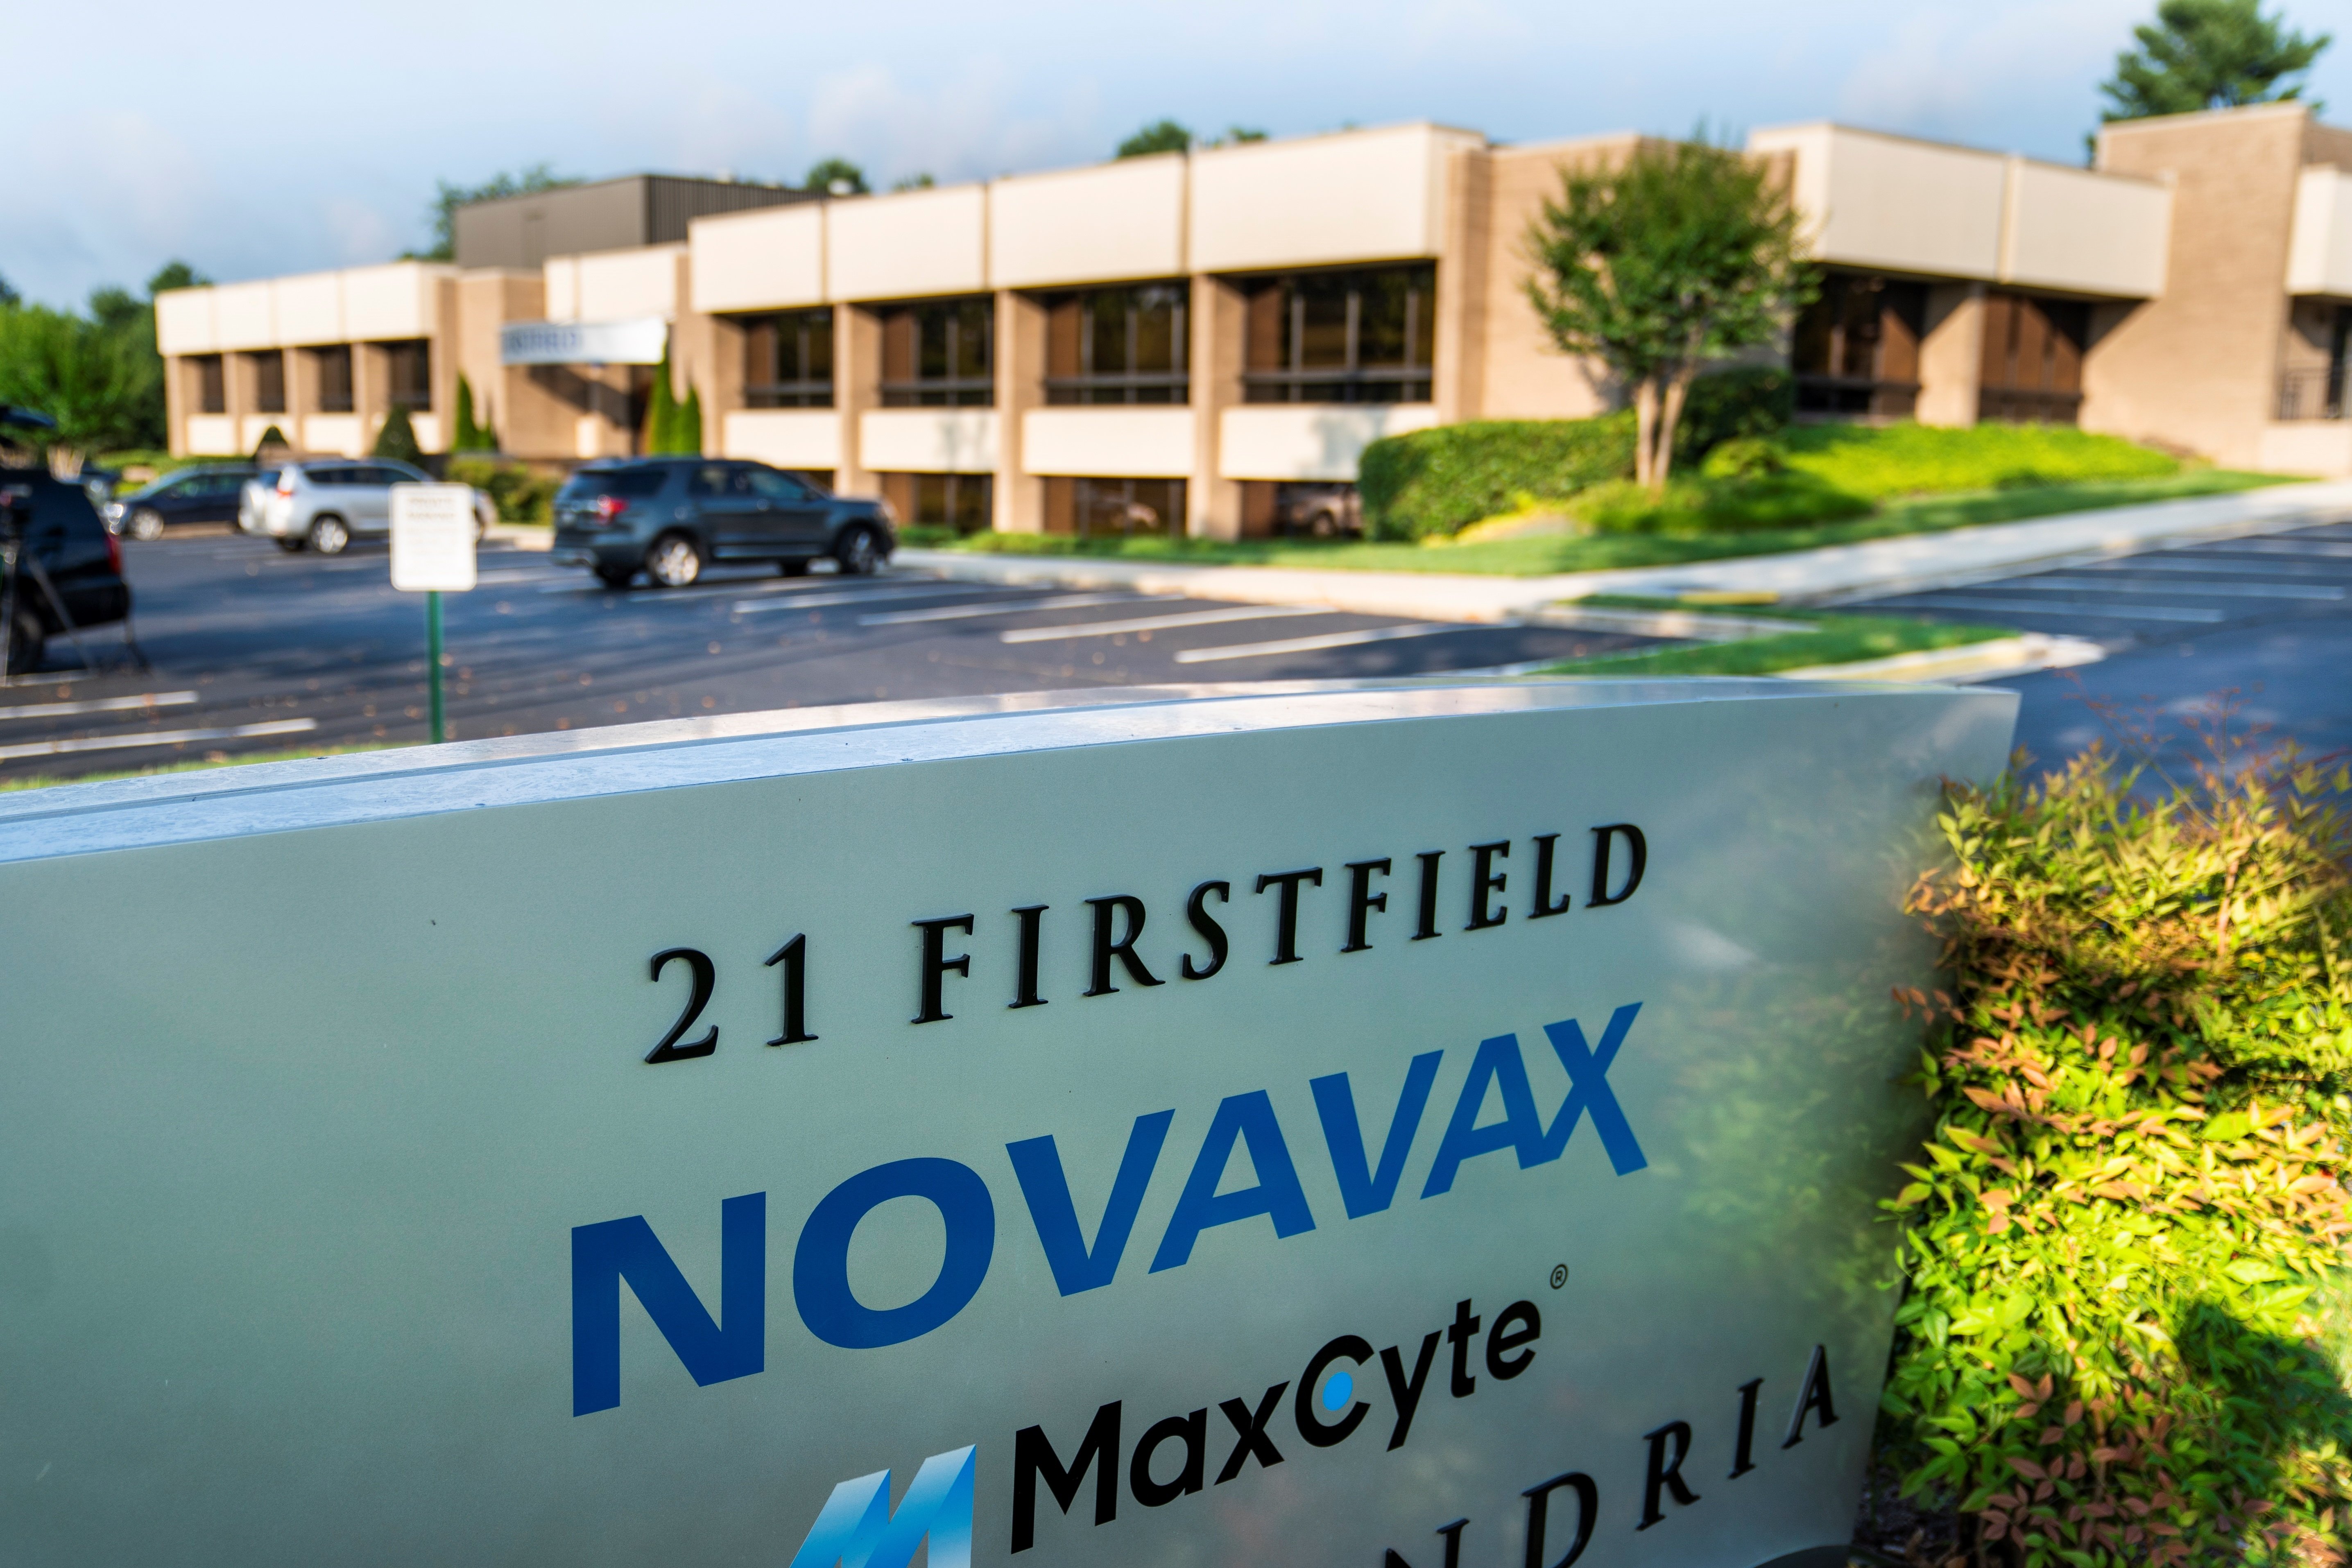 La vacuna contra la Covid de Novavax té una eficàcia del 89%